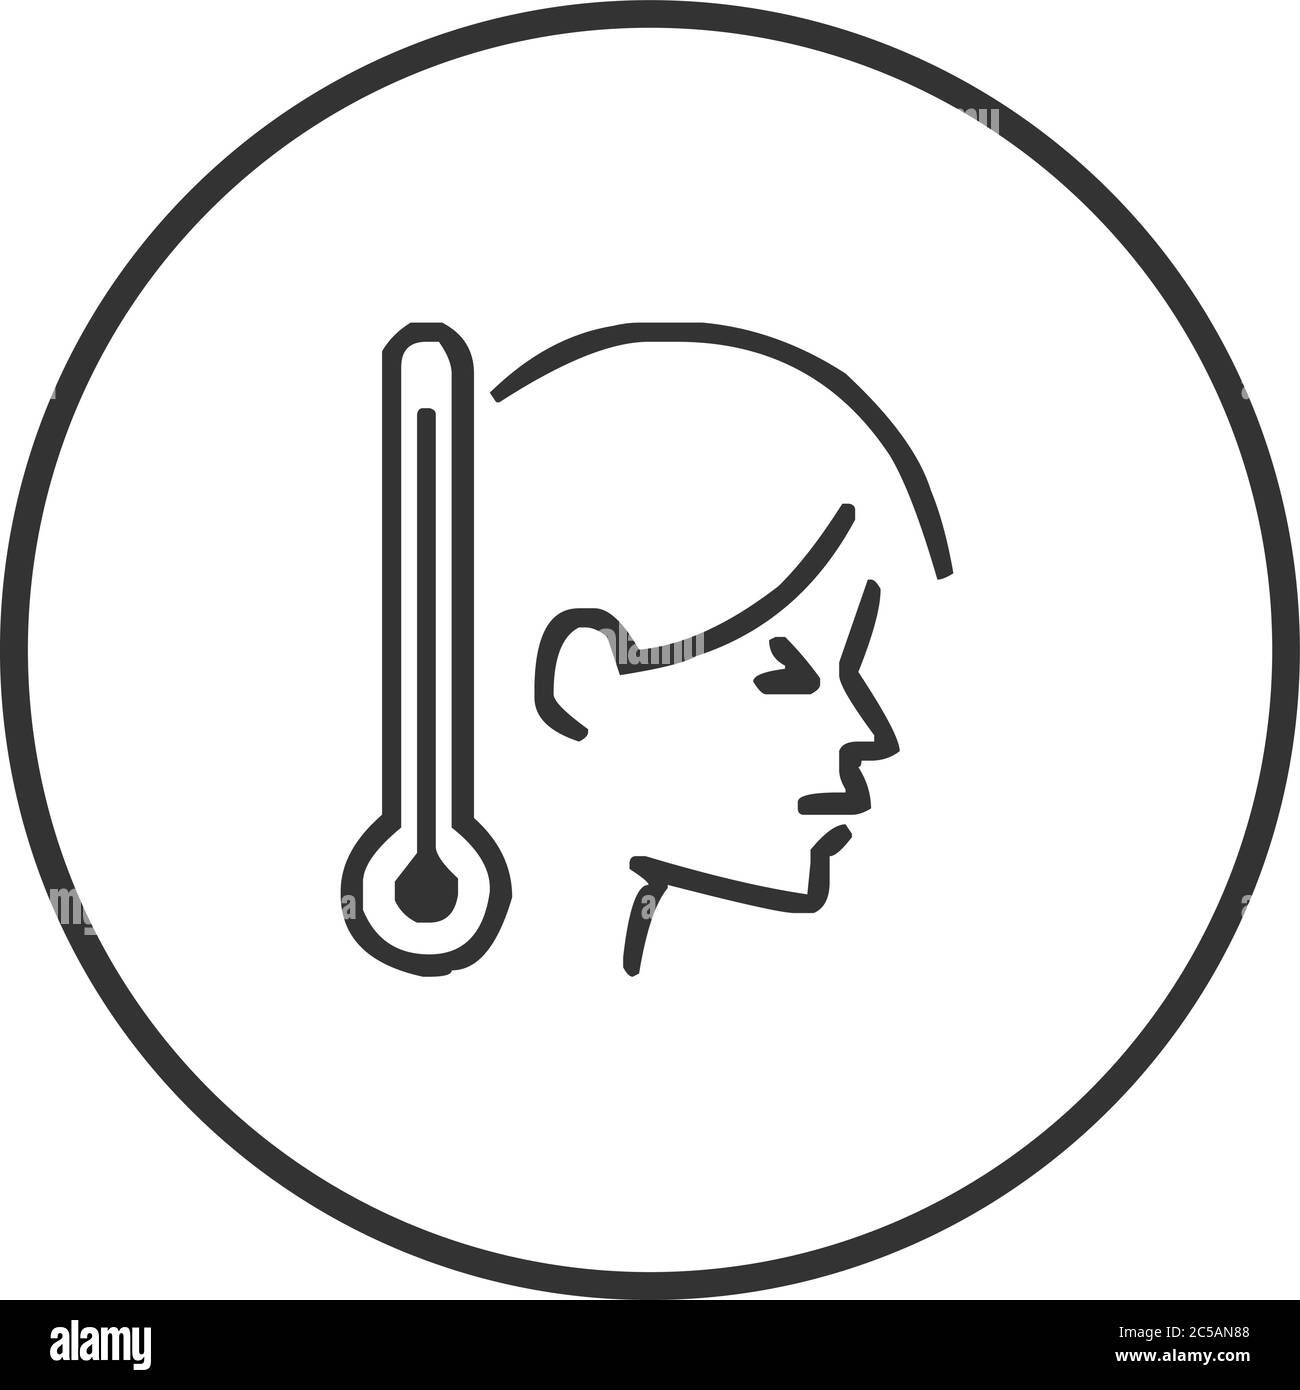 High fever headache icon vector illustration Stock Vector